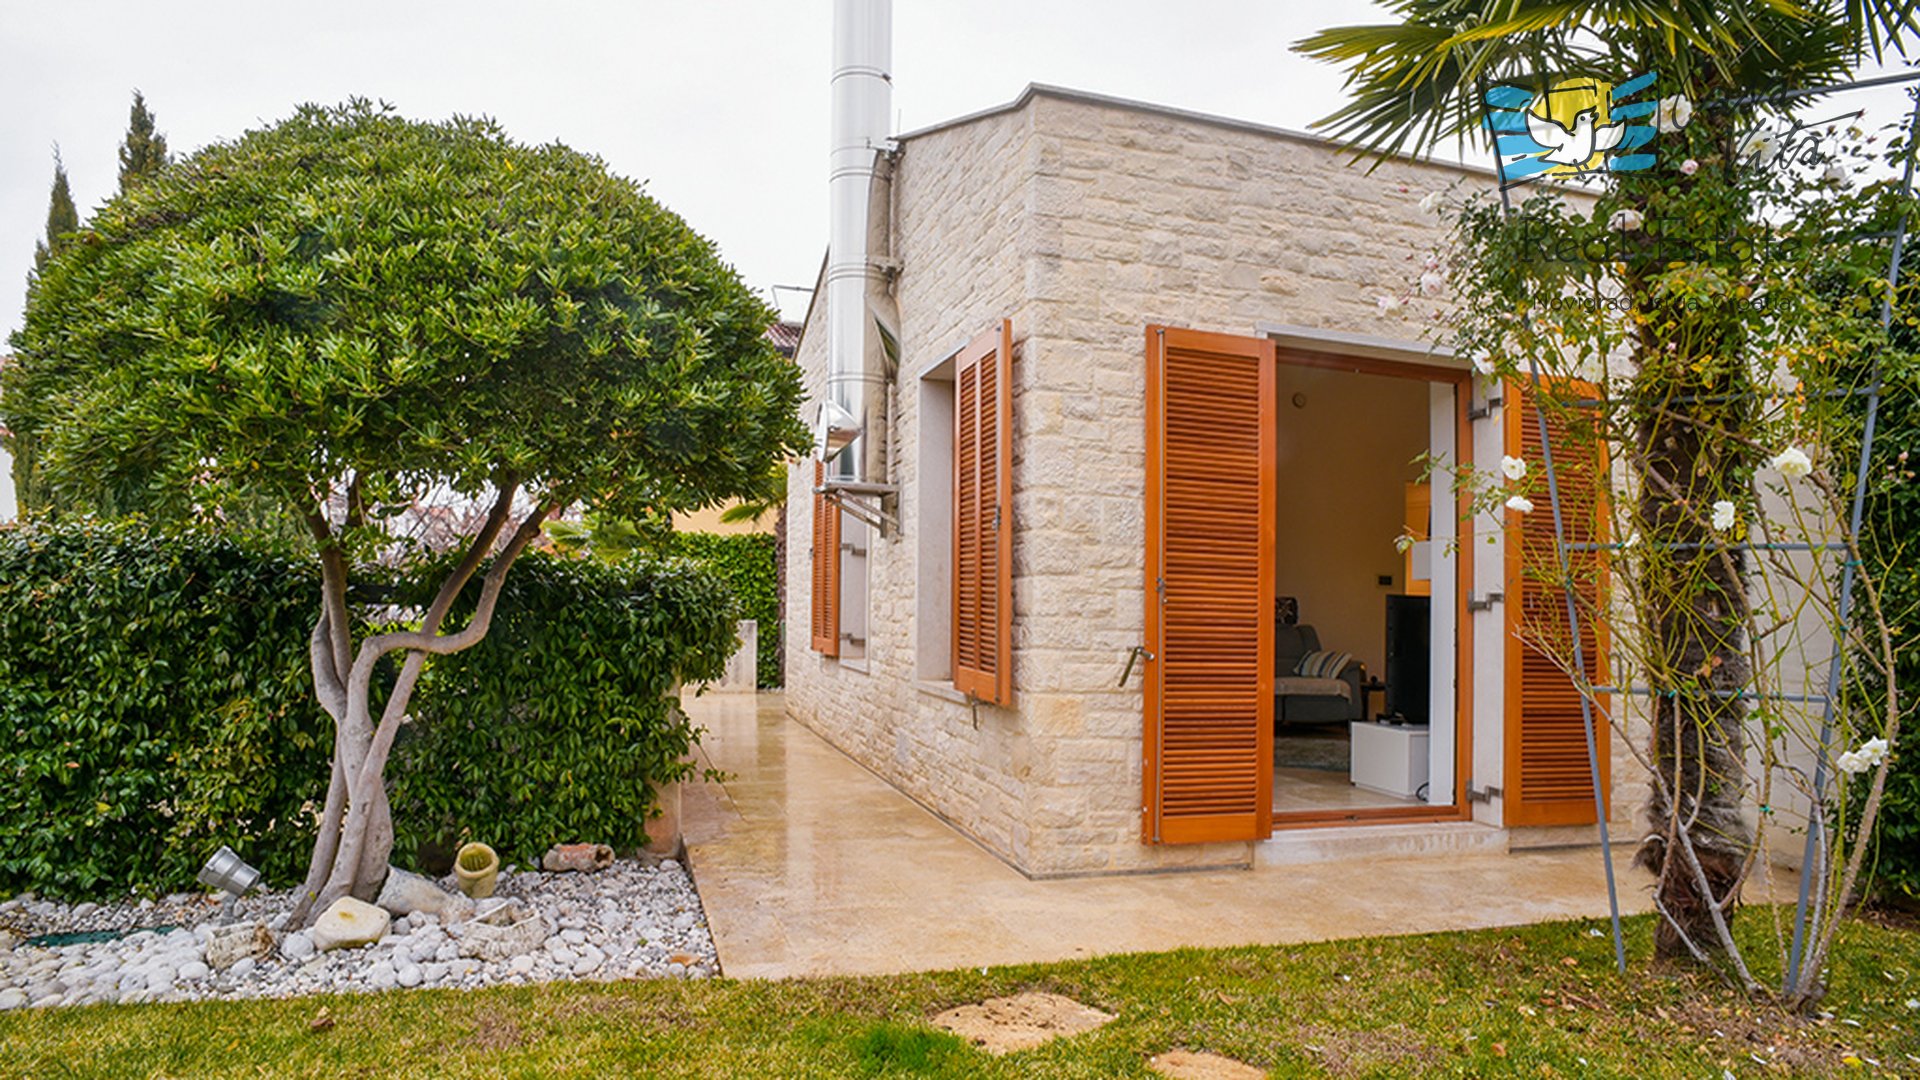 Casa moderna in un'ottima posizione a Cittanova, a 350 metri dal mare!